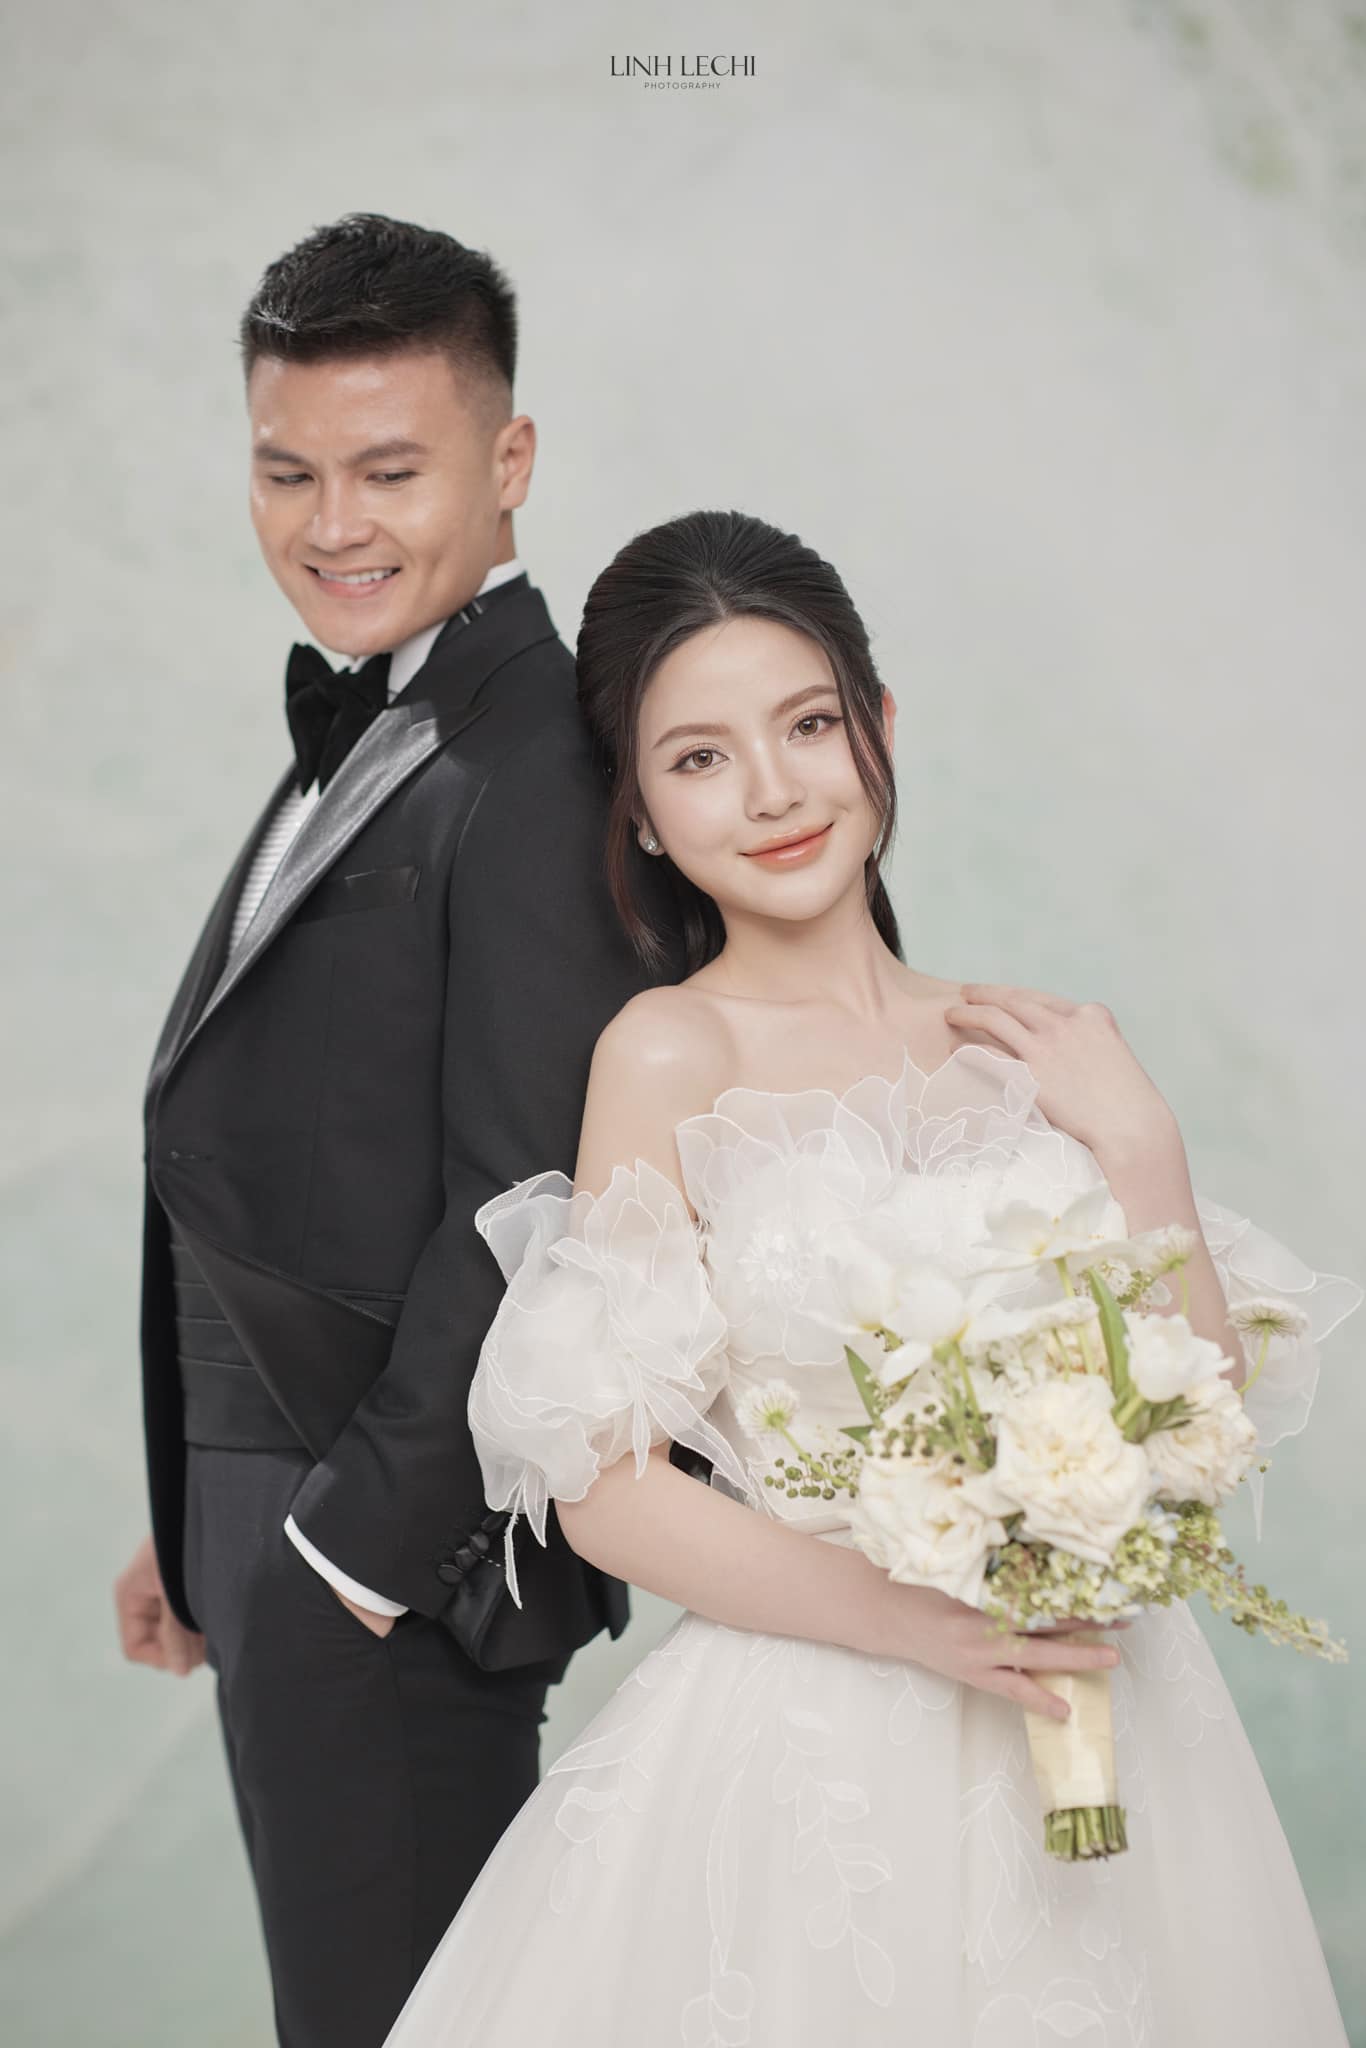 Quang Hải và Chu Thanh Huyền tung ảnh cưới, nhưng chiều cao 'bất ổn' của chú rể gây hoang mang - ảnh 3